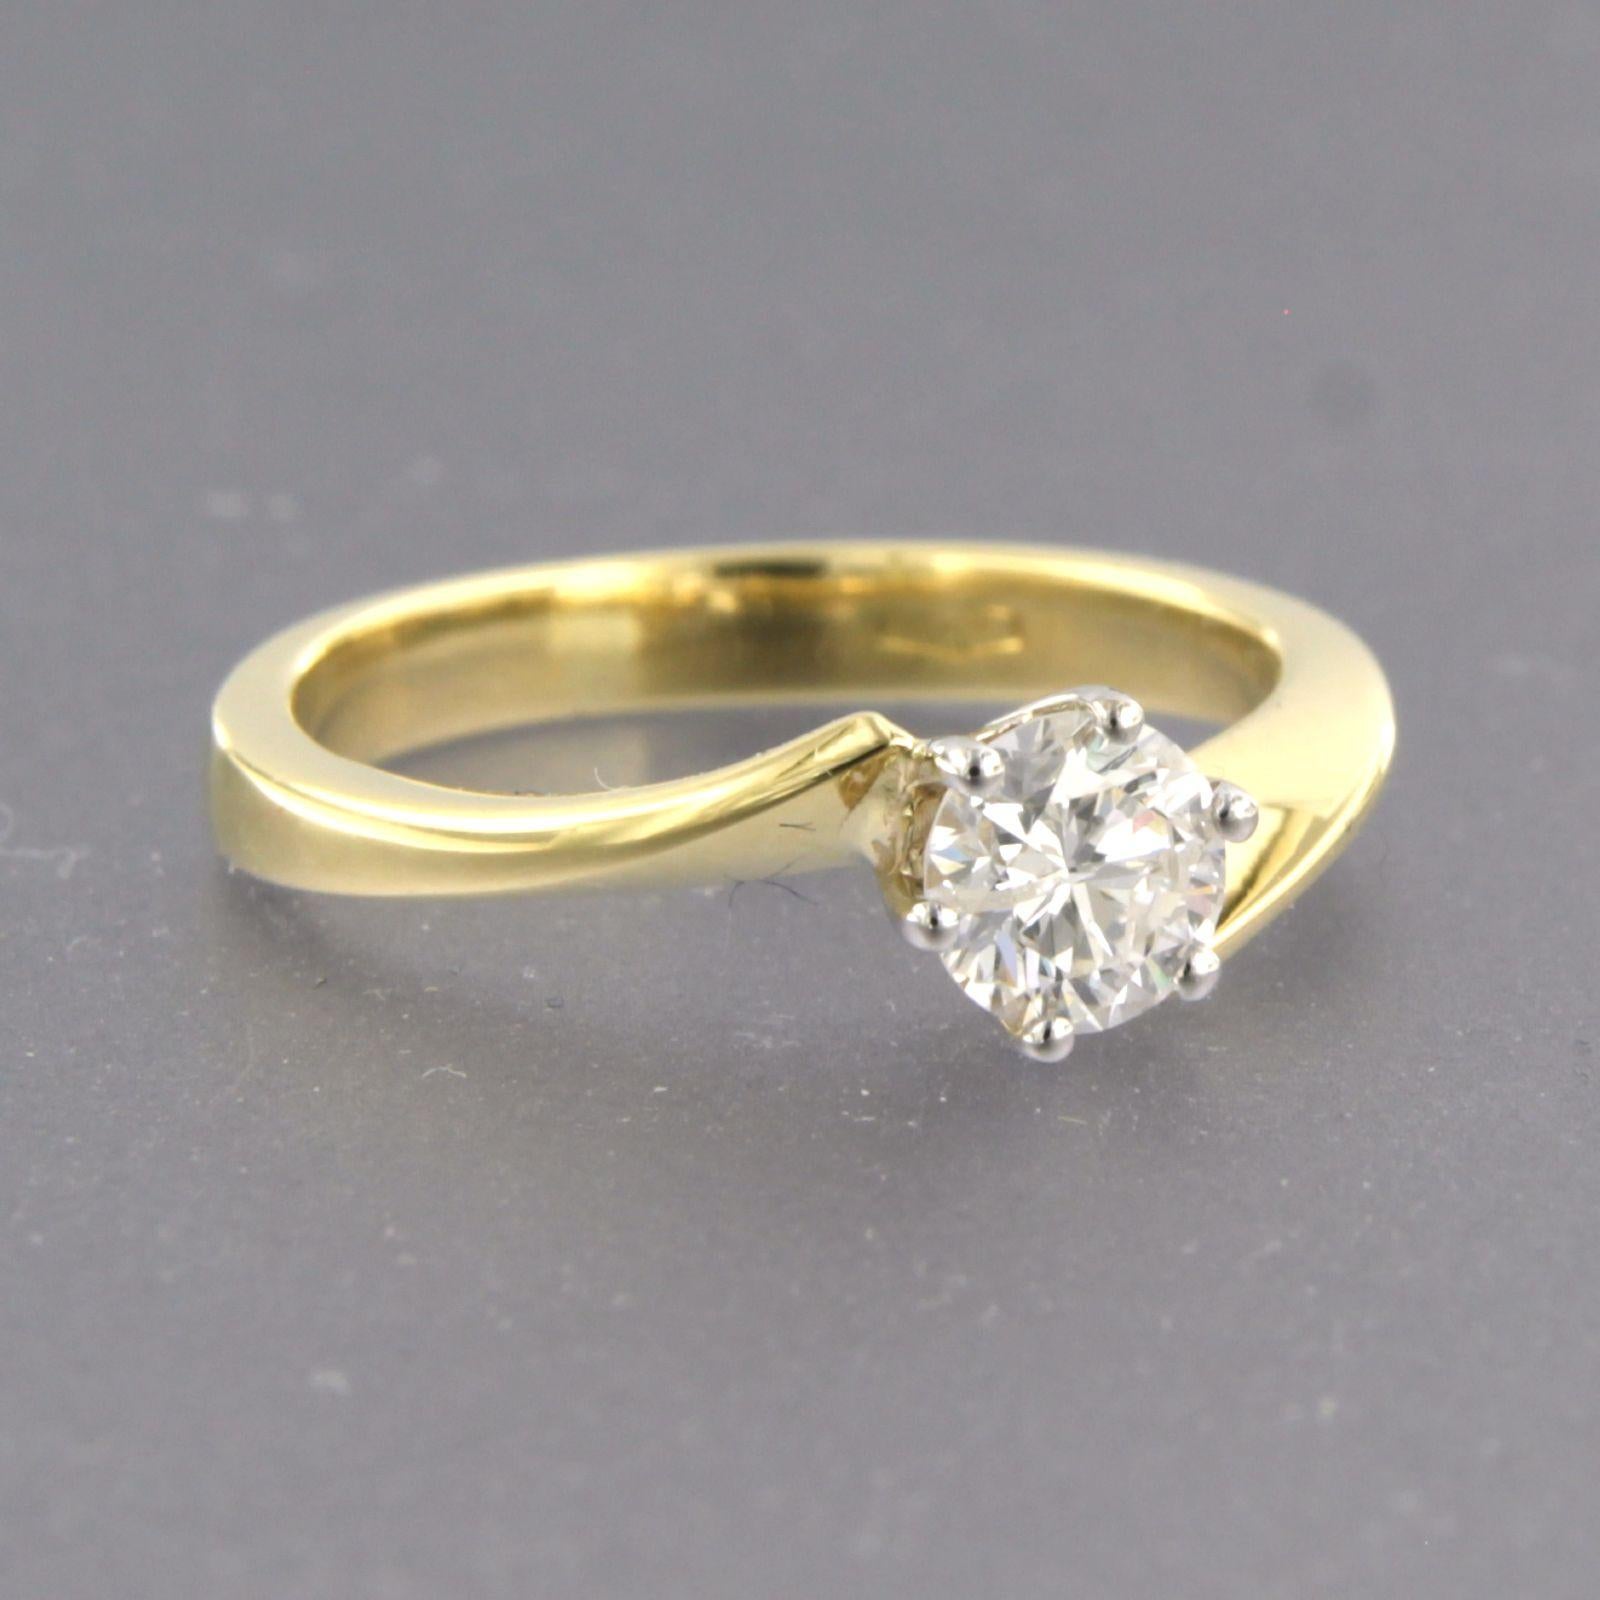 Solitärring aus 18 Karat Bicolor-Gold, besetzt mit Diamanten im Brillantschliff bis zu . 0,50ct - F/G - P1 - Ringgröße U.S. 5,25 - EU. 16(50)

detaillierte Beschreibung:

die Oberseite des Rings ist 5,9 mm breit und 5,5 mm hoch

Ringgröße US 5.25 -